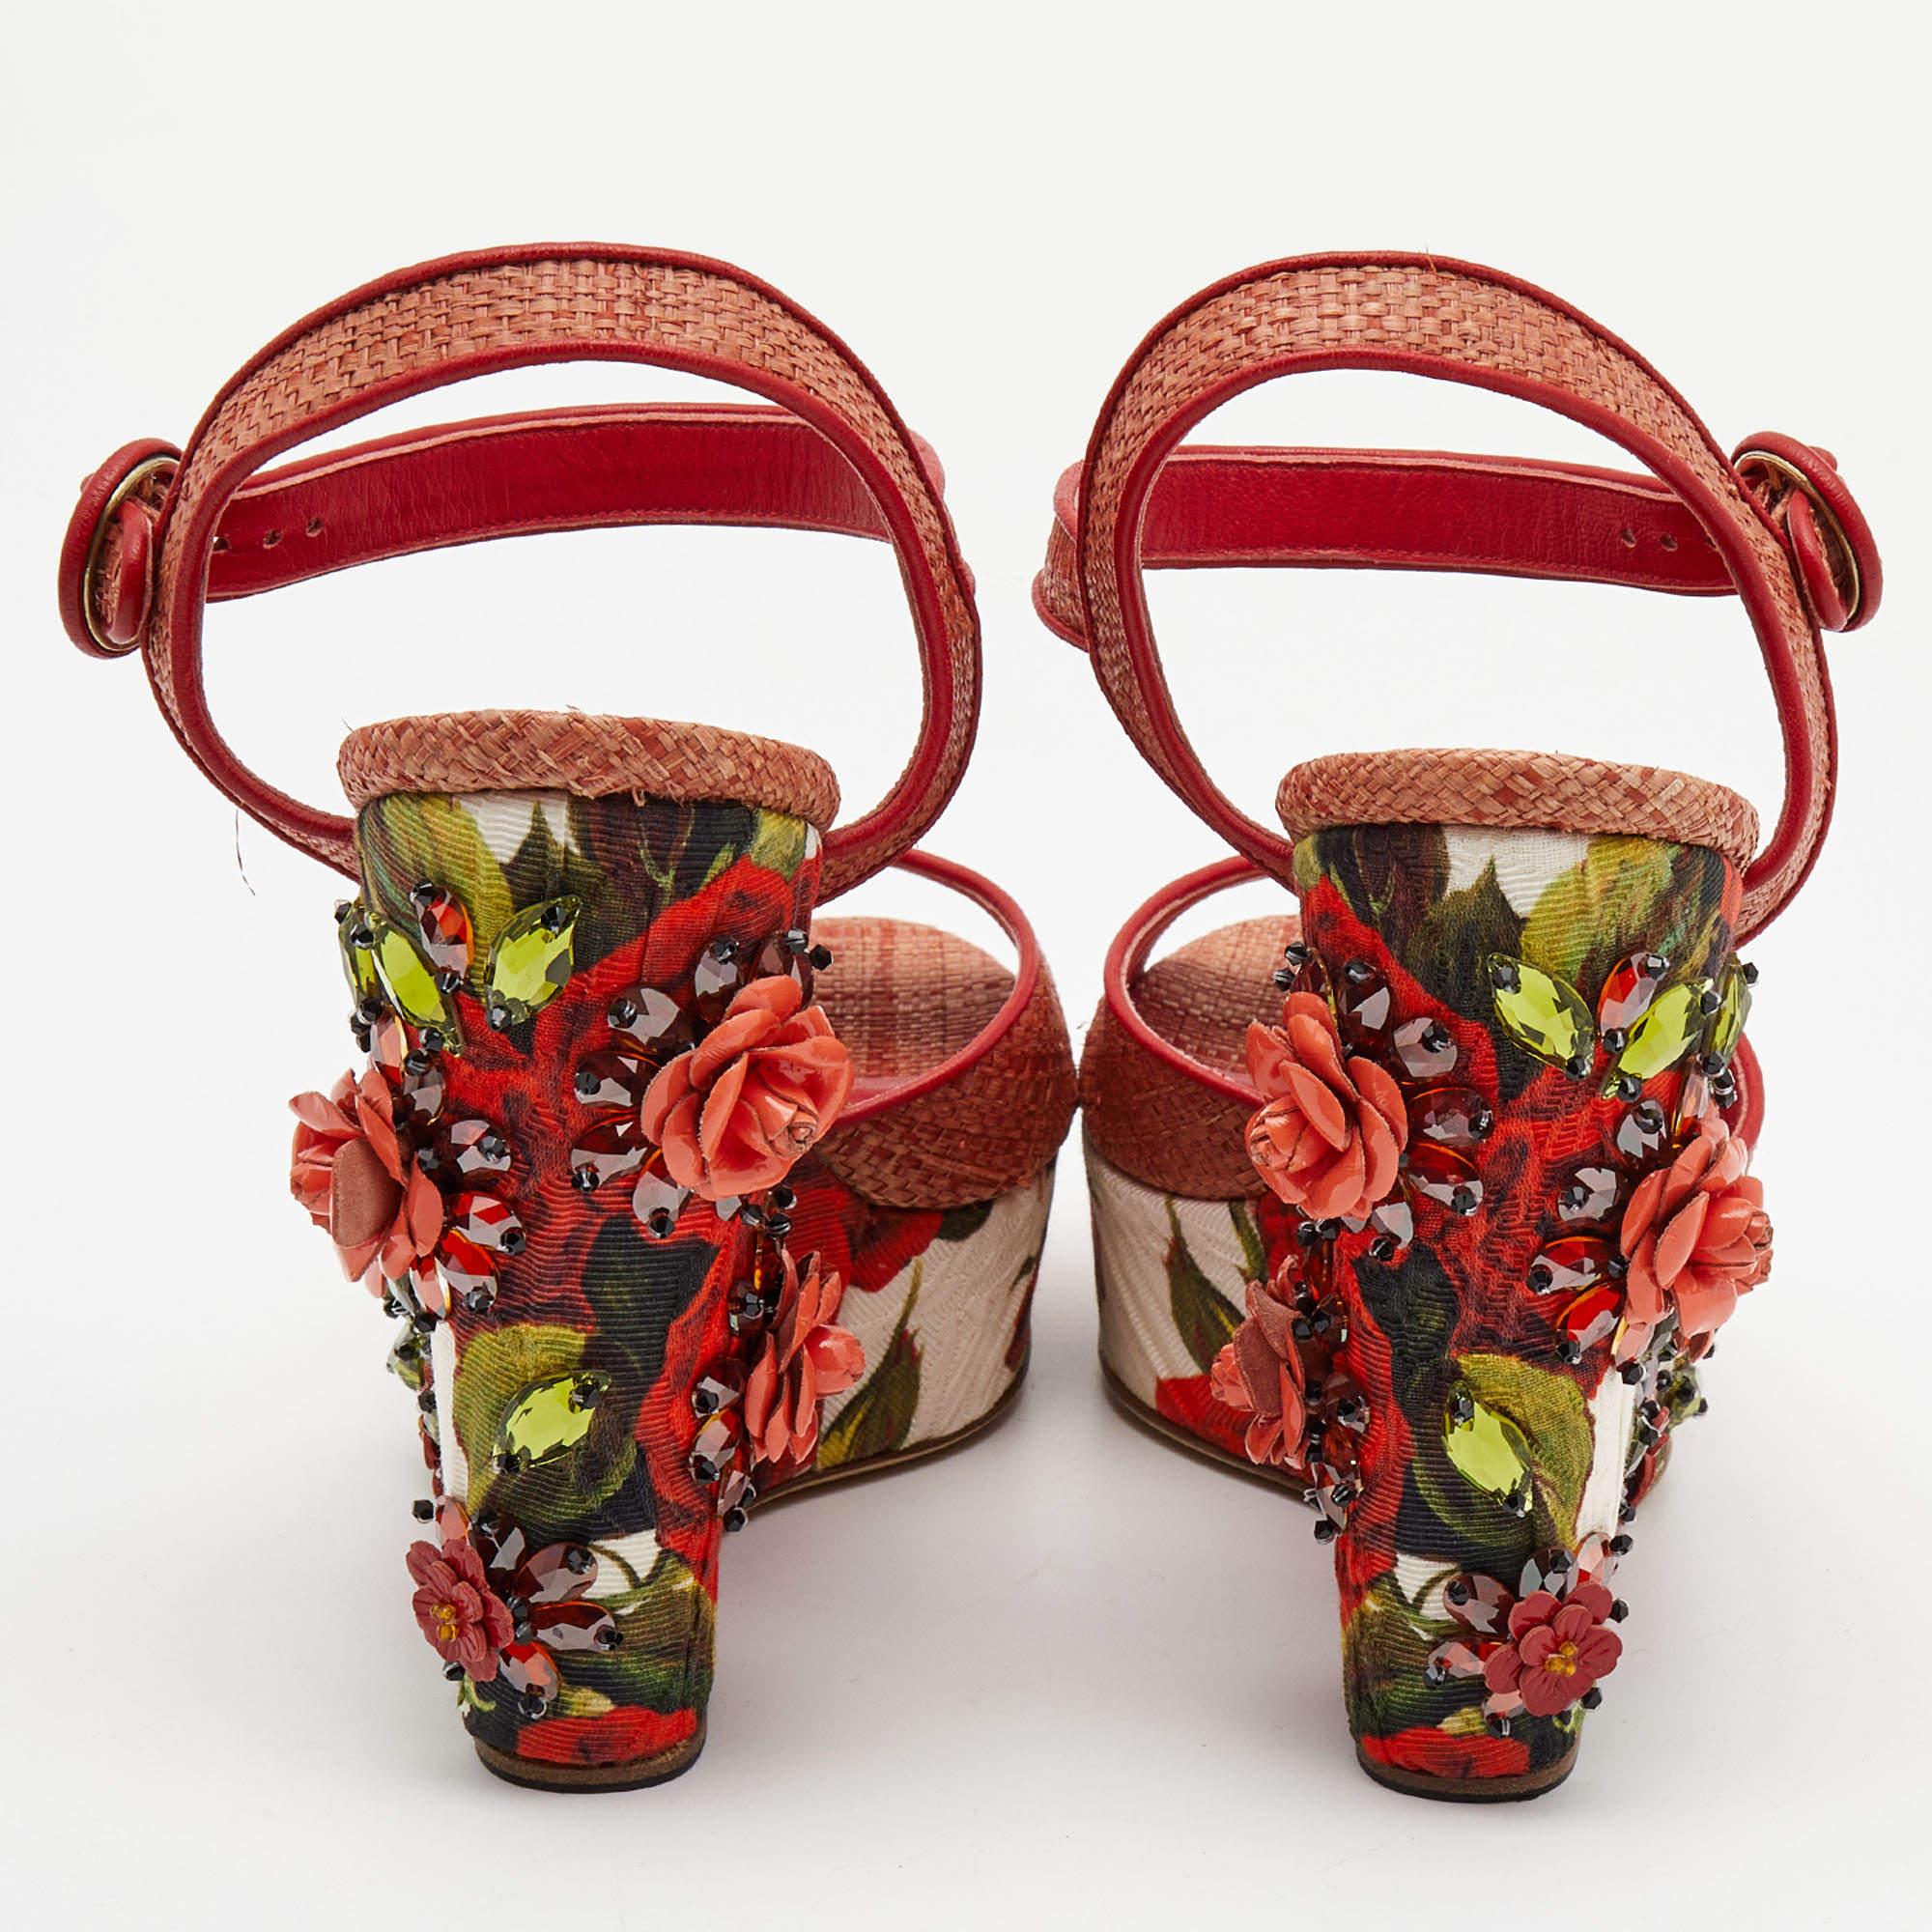 Parfaitement cousues et finies pour garantir un look et une coupe élégants, ces chaussures compensées Dolce & Gabbana sont un achat que vous aimerez exhiber. Ils sont très beaux sur les pieds.

